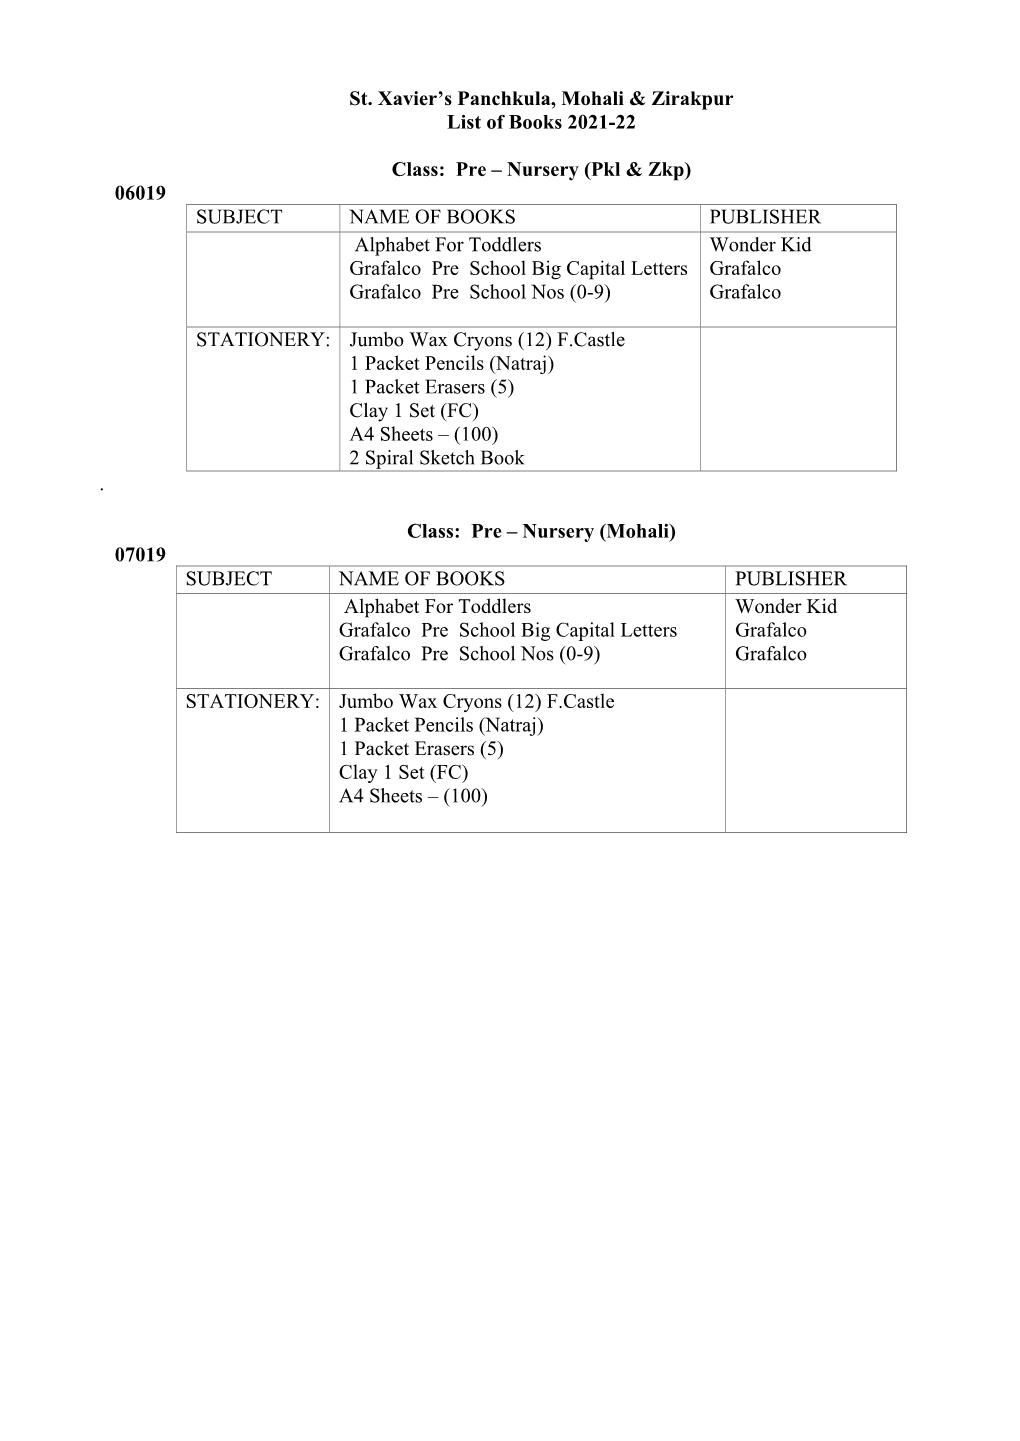 St. Xavier's Panchkula, Mohali & Zirakpur List of Books 2021-22 Class: Pre – Nursery (Pkl & Zkp) 06019 SUBJECT NAME